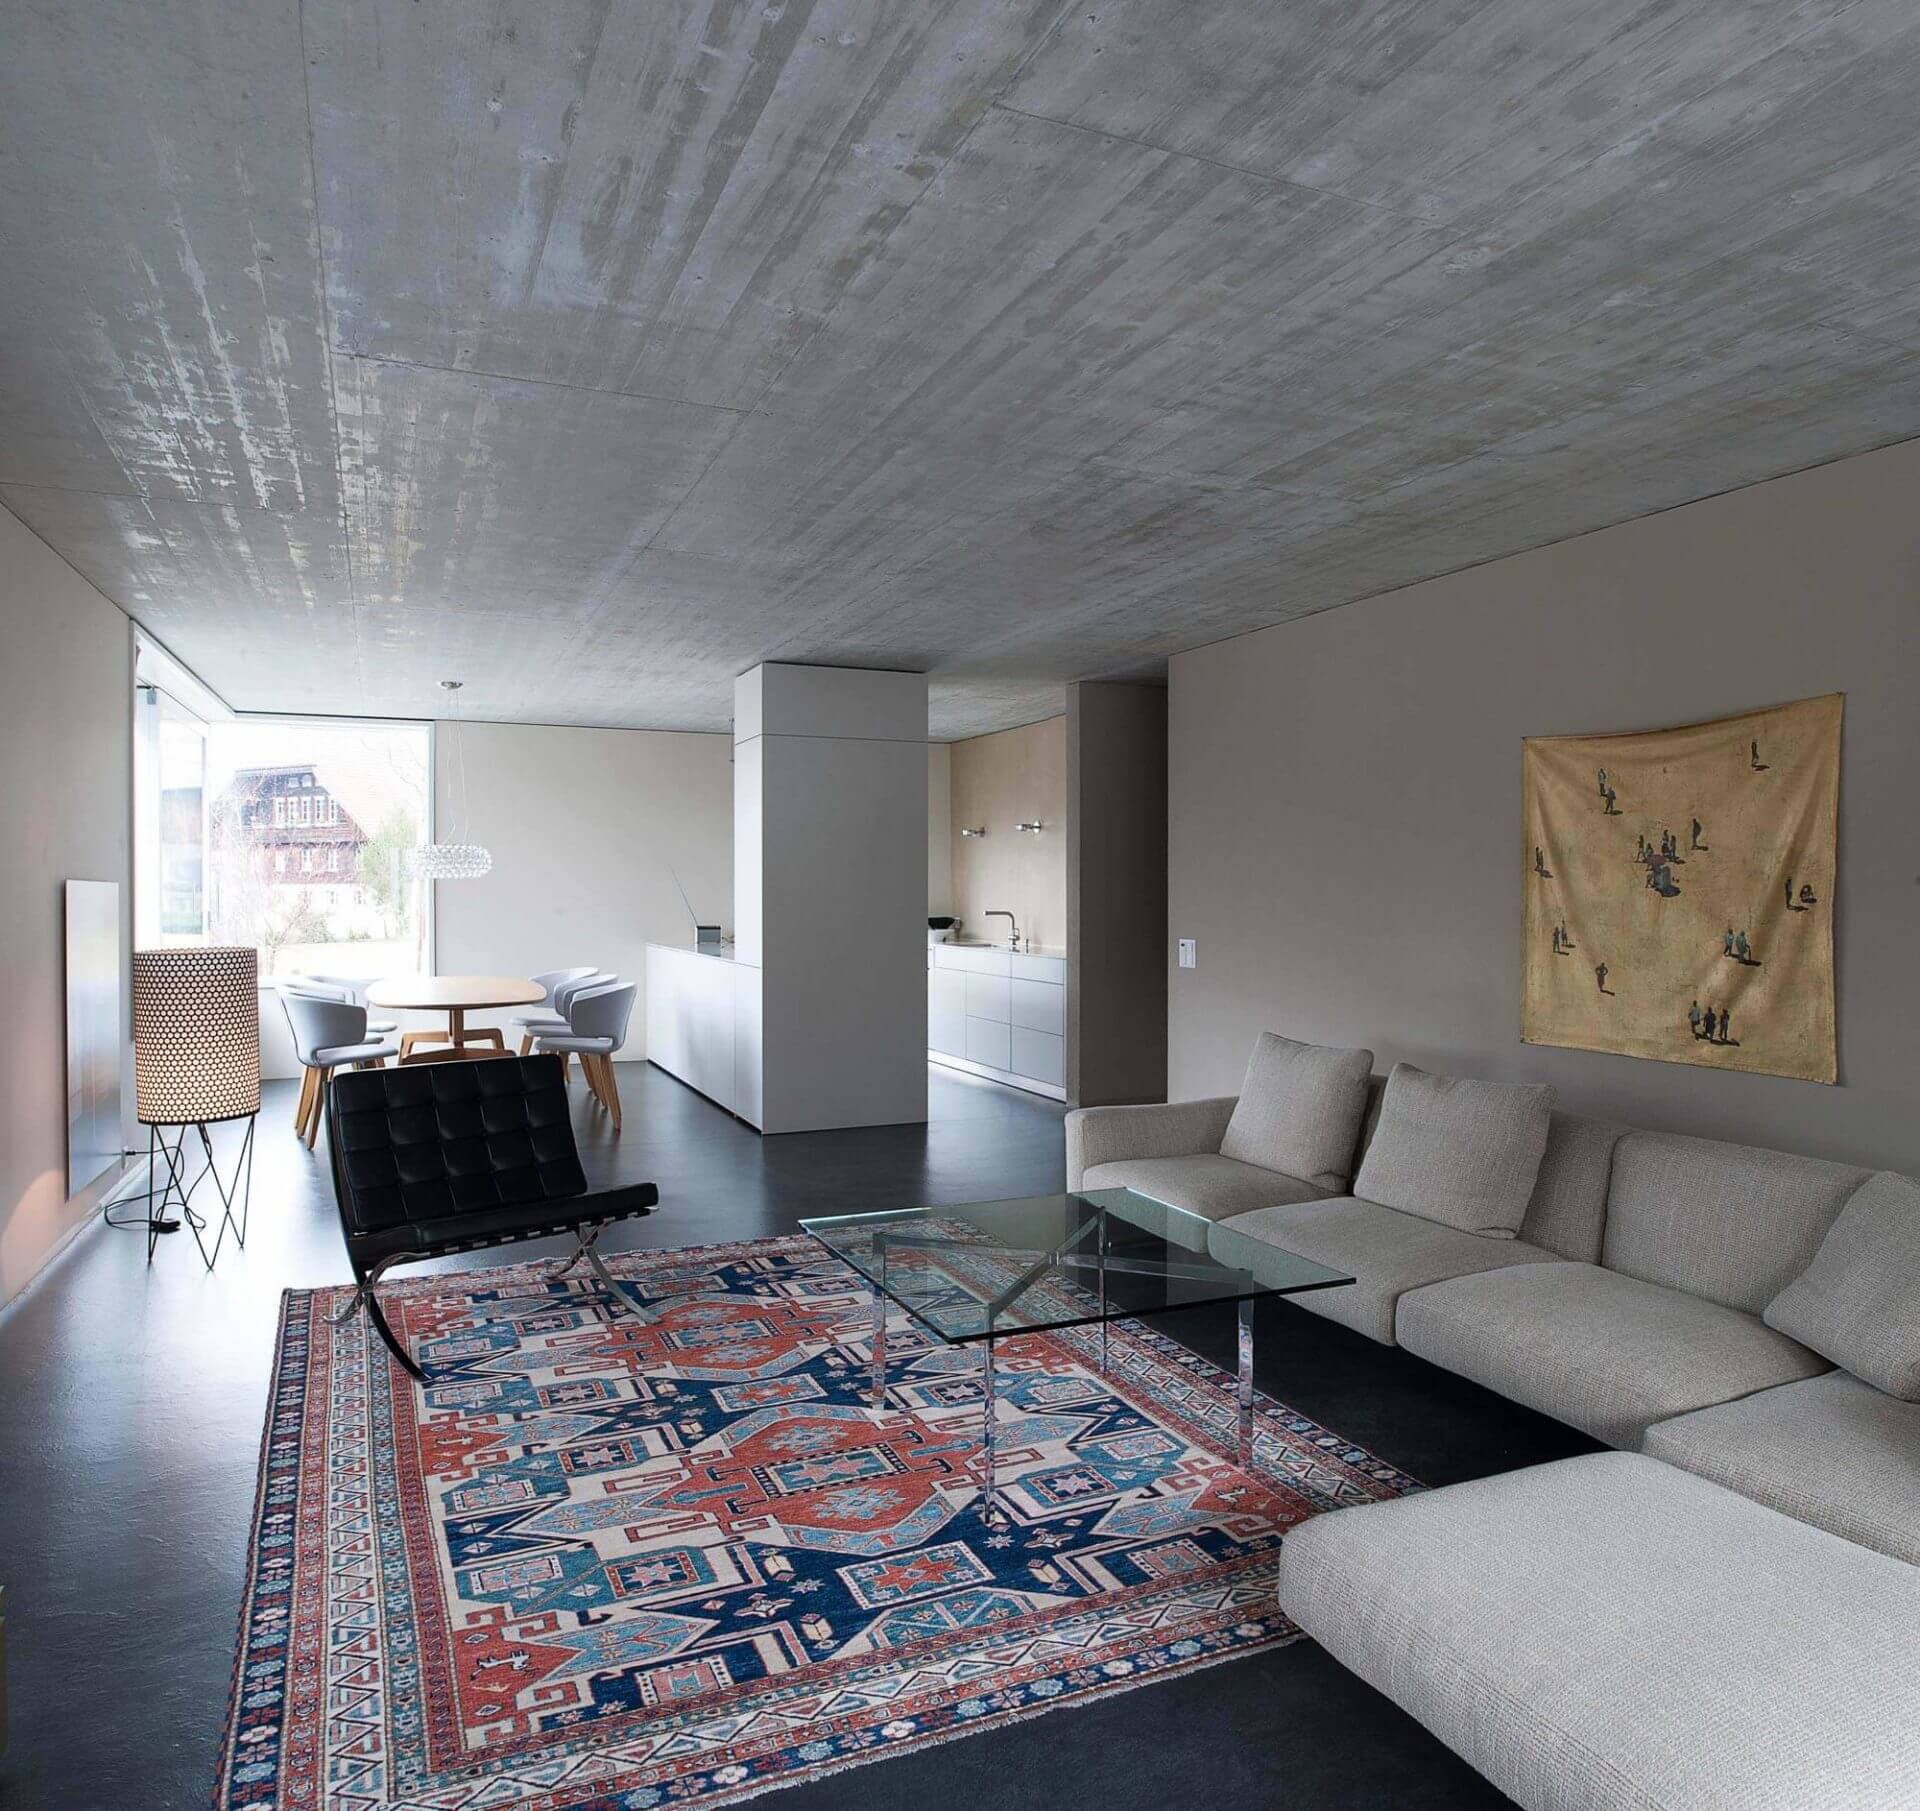 Urbane Einfachheit an der Aare.
Farb-, Material- und Einrichtungskonzept inklusive Beleuchtung Neubau Eigentumswohnung, Muri bei Bern